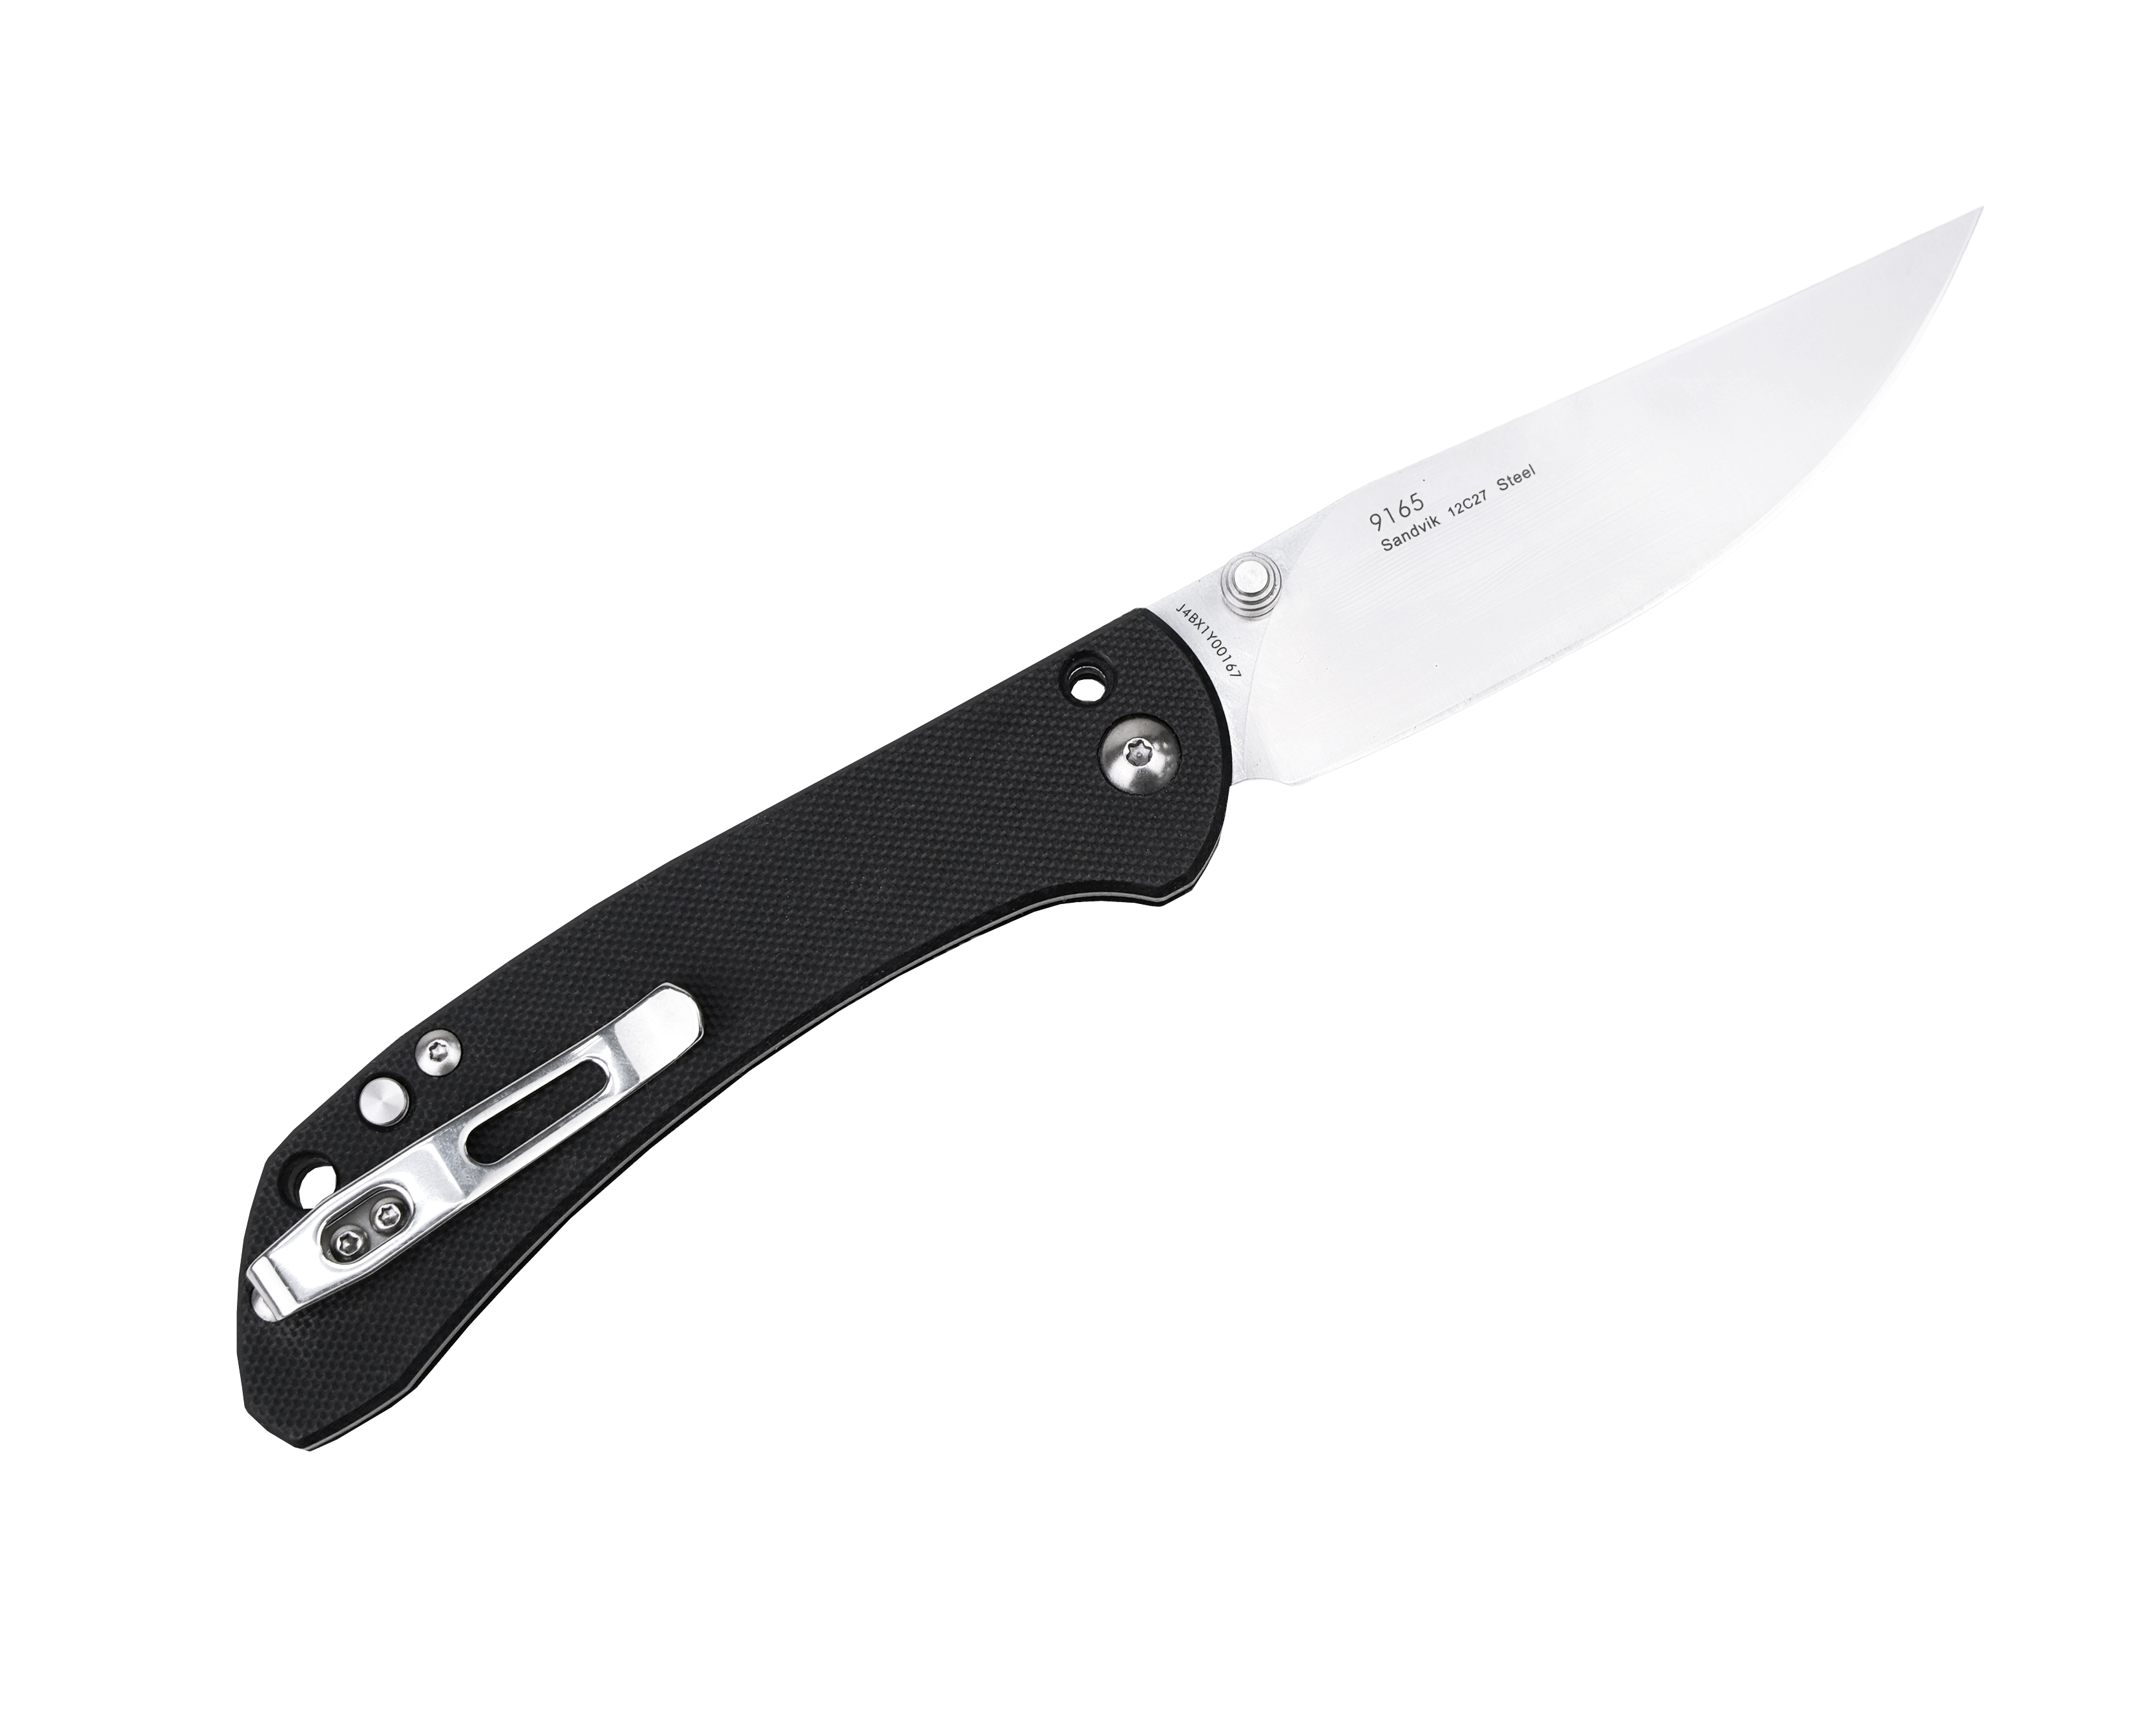 Нож Sanrenmu 9165 складной сталь 12C27 brush black G10 - фото 1